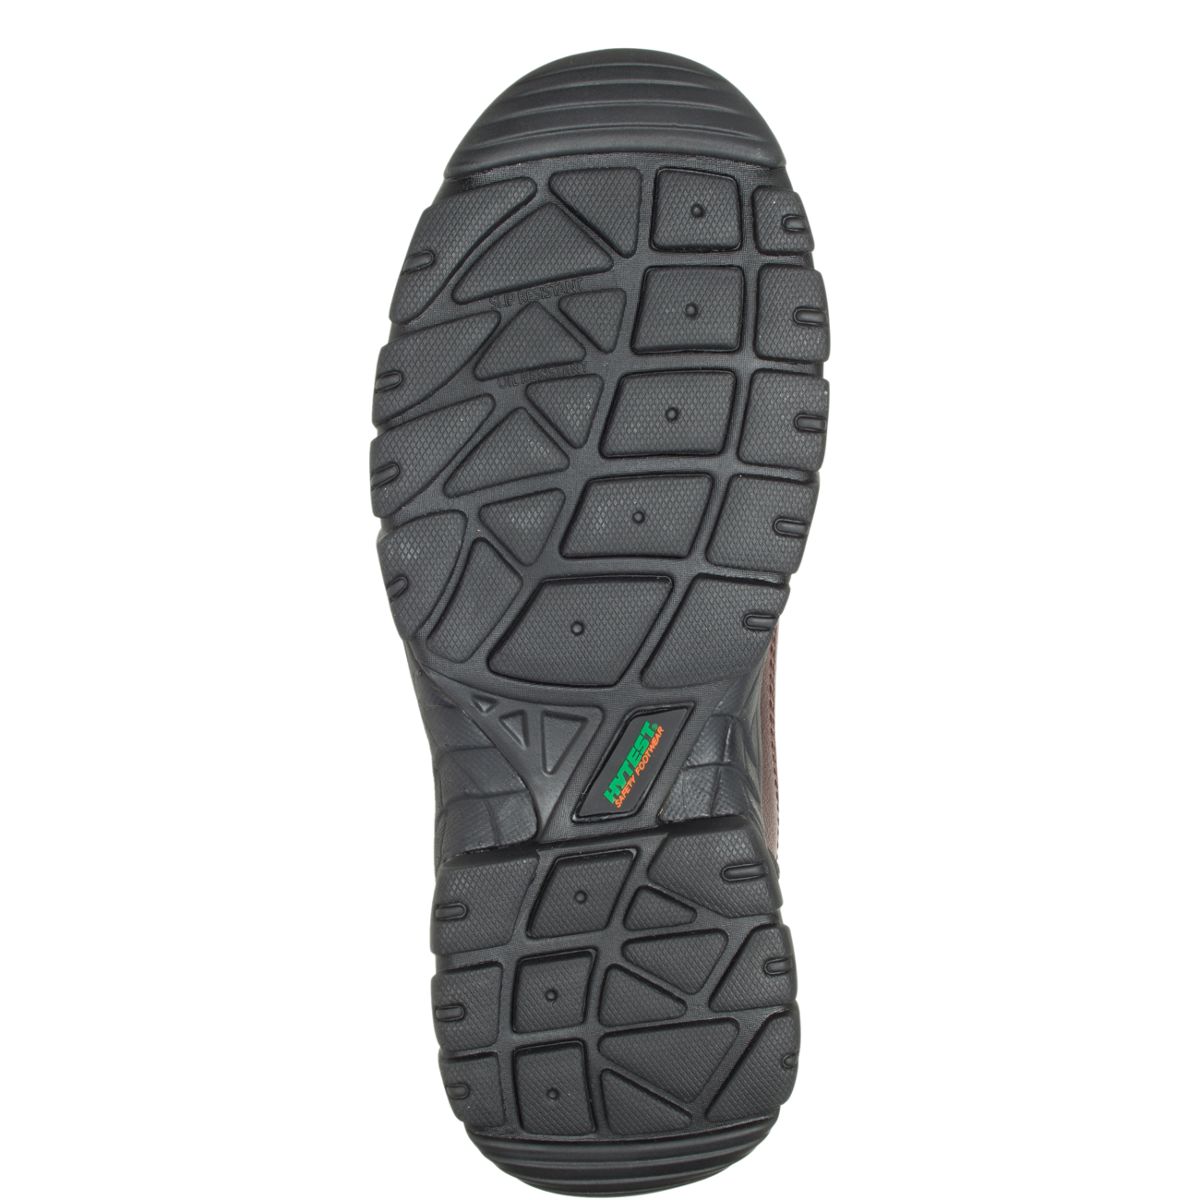 Apex Waterproof Composite Toe 6" Hiker, Brown, dynamic 6